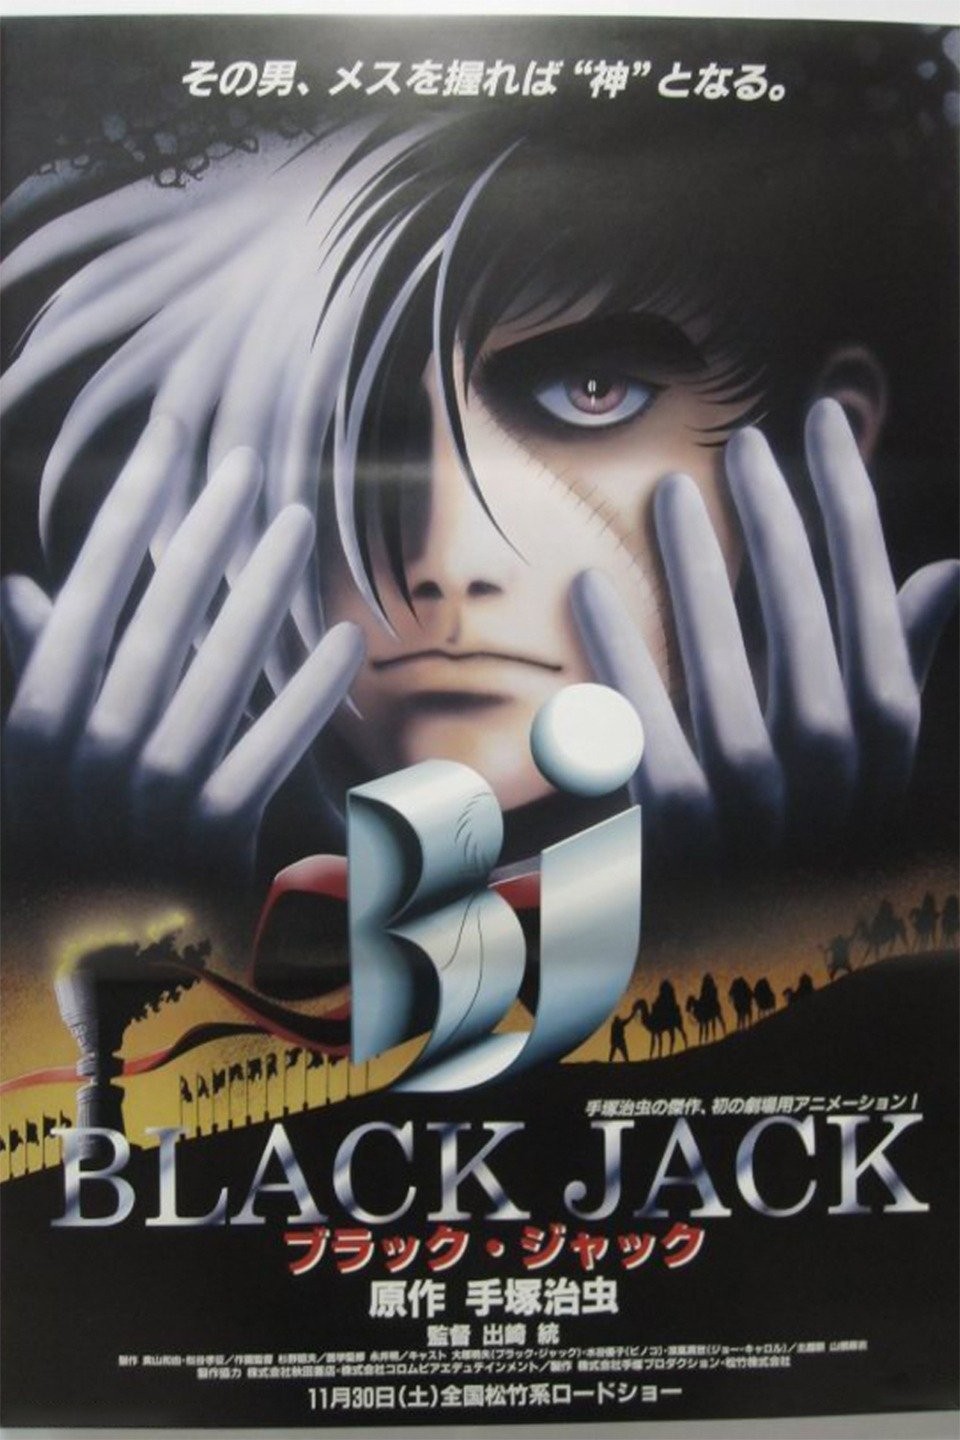 Black Jack TV Mini Series 19932018  IMDb